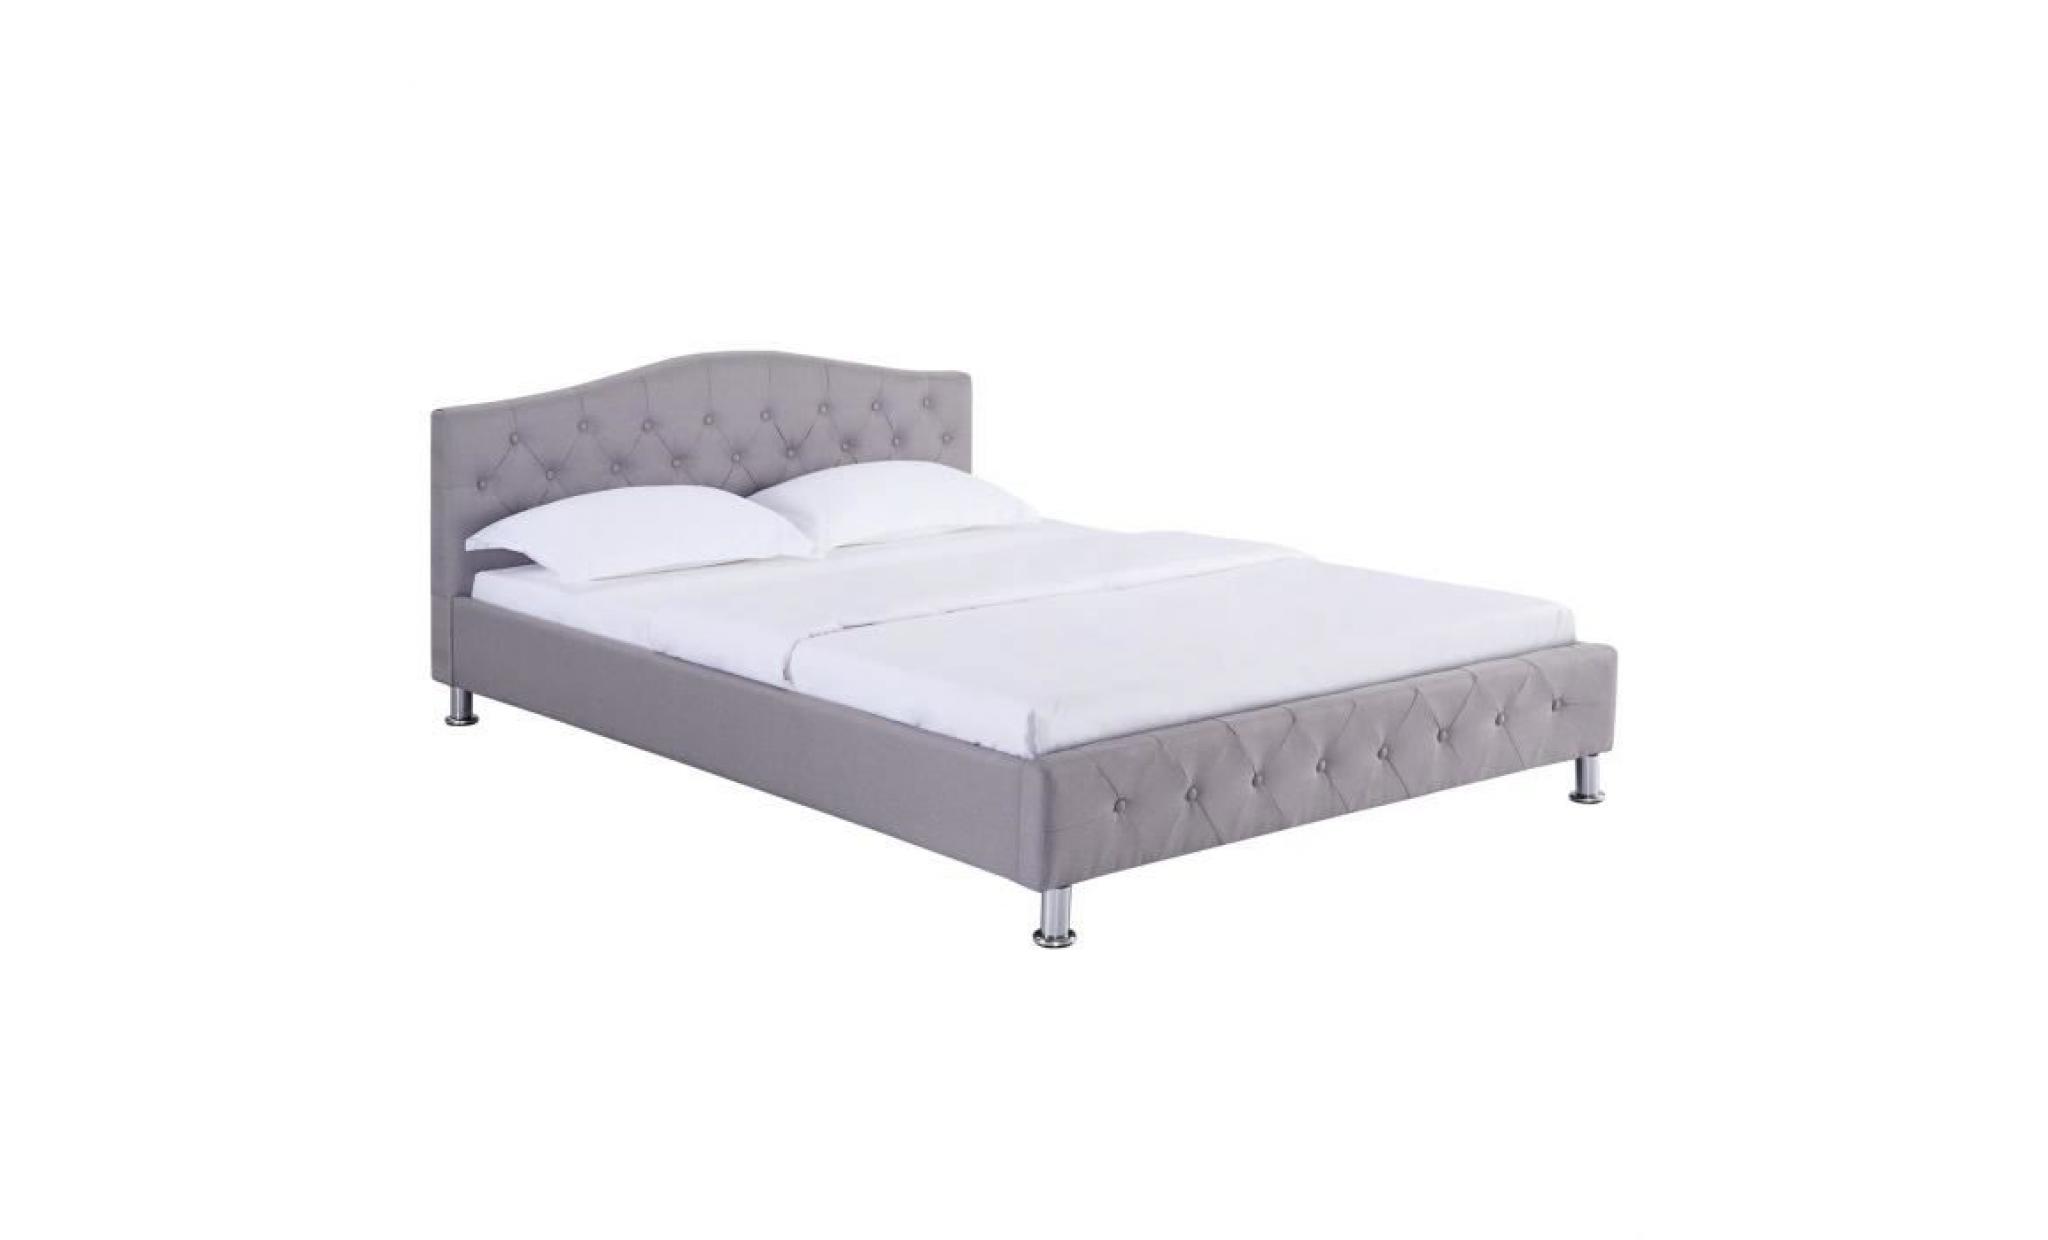 lit double pour adulte biarritz 140x190 cm 2 places / 2 personnes, avec sommier et pieds en métal chromé, tissu capitonné gris